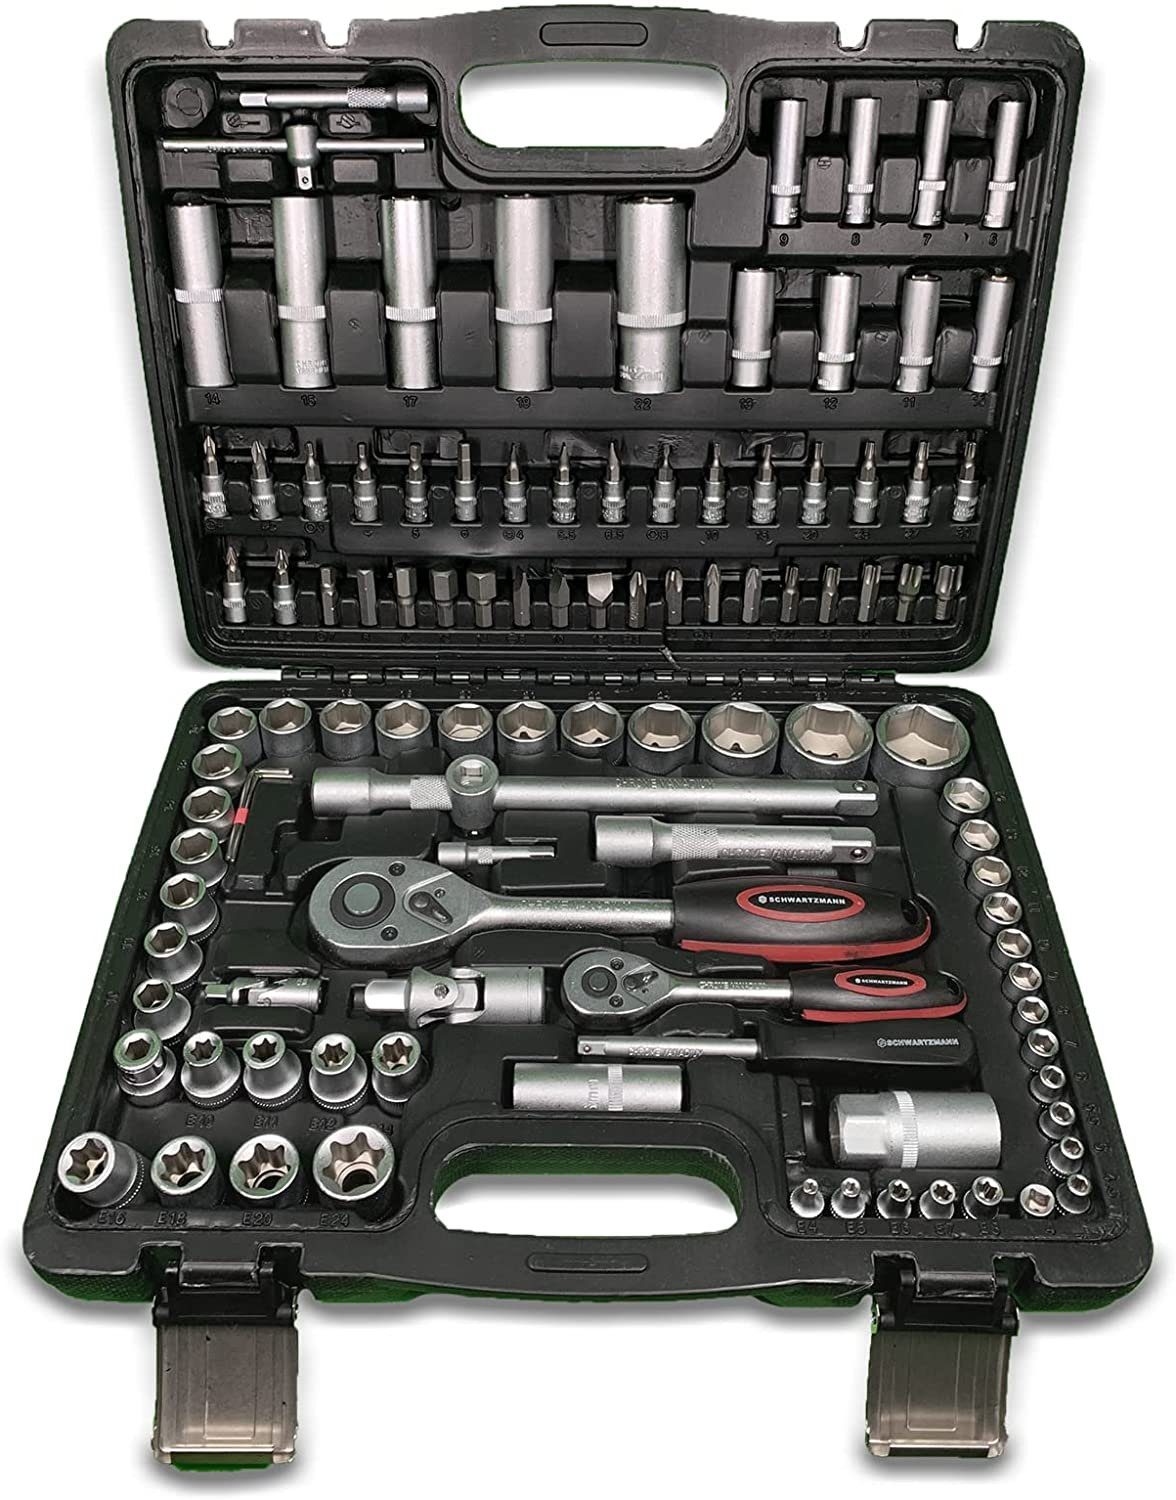 Markenwarenshop-Style Werkzeugset Schwartzmann Werkzeugkoffer Werkzeugset  mit 108 Teile | Werkzeug-Sets